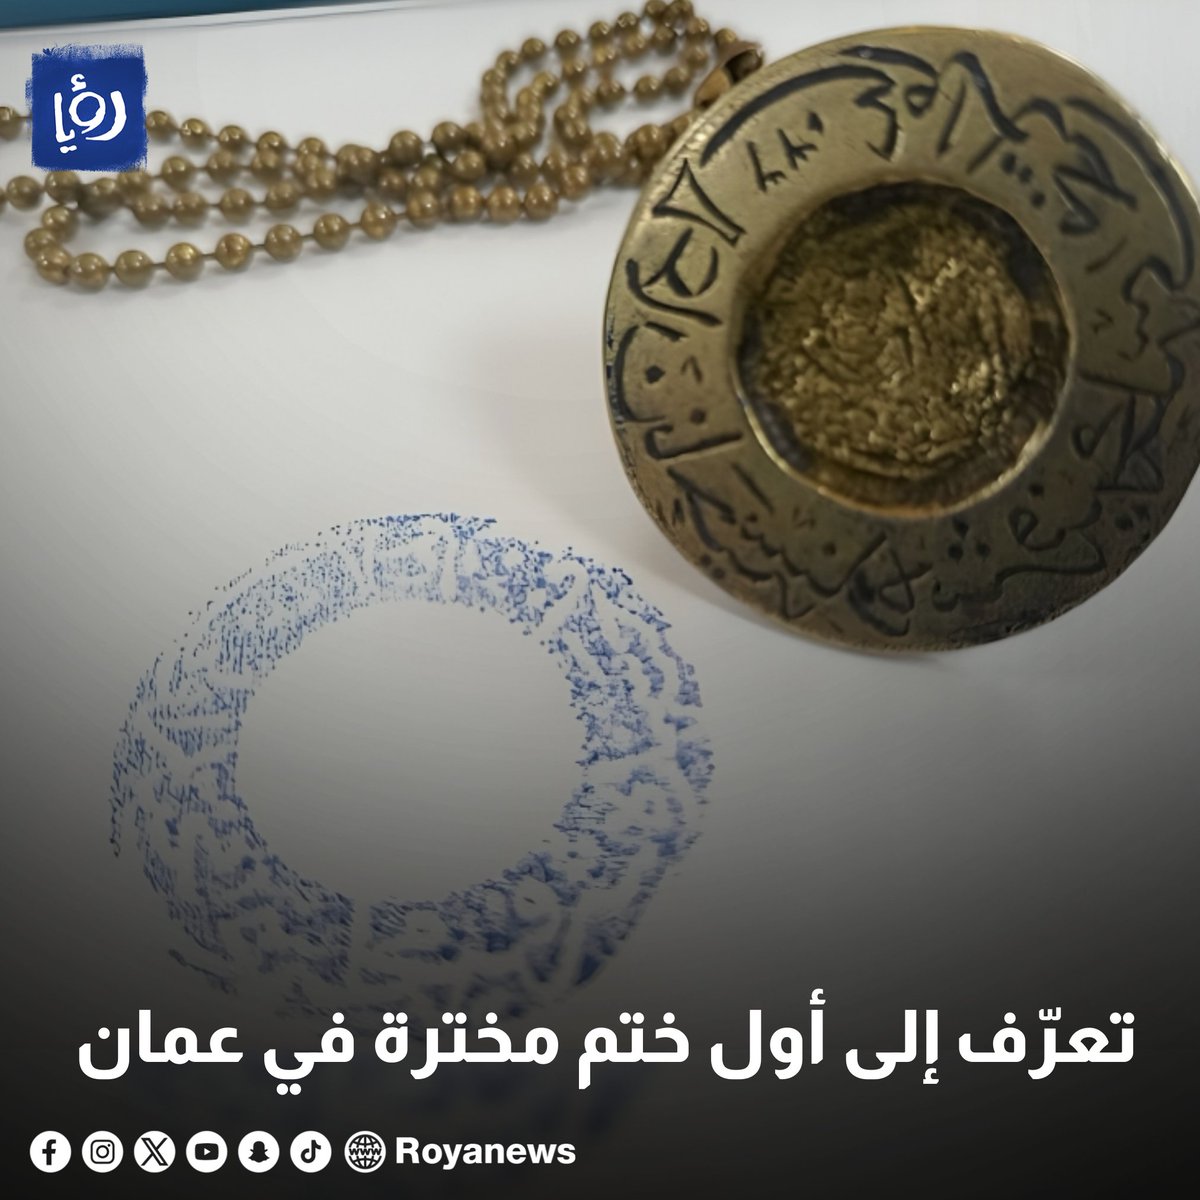 تعرّف إلى أول ختم مخترة في عمان - صور royanews.tv/news/327663 #رؤيا_الإخباري #عمان #مختار #مقتنيات #التراث